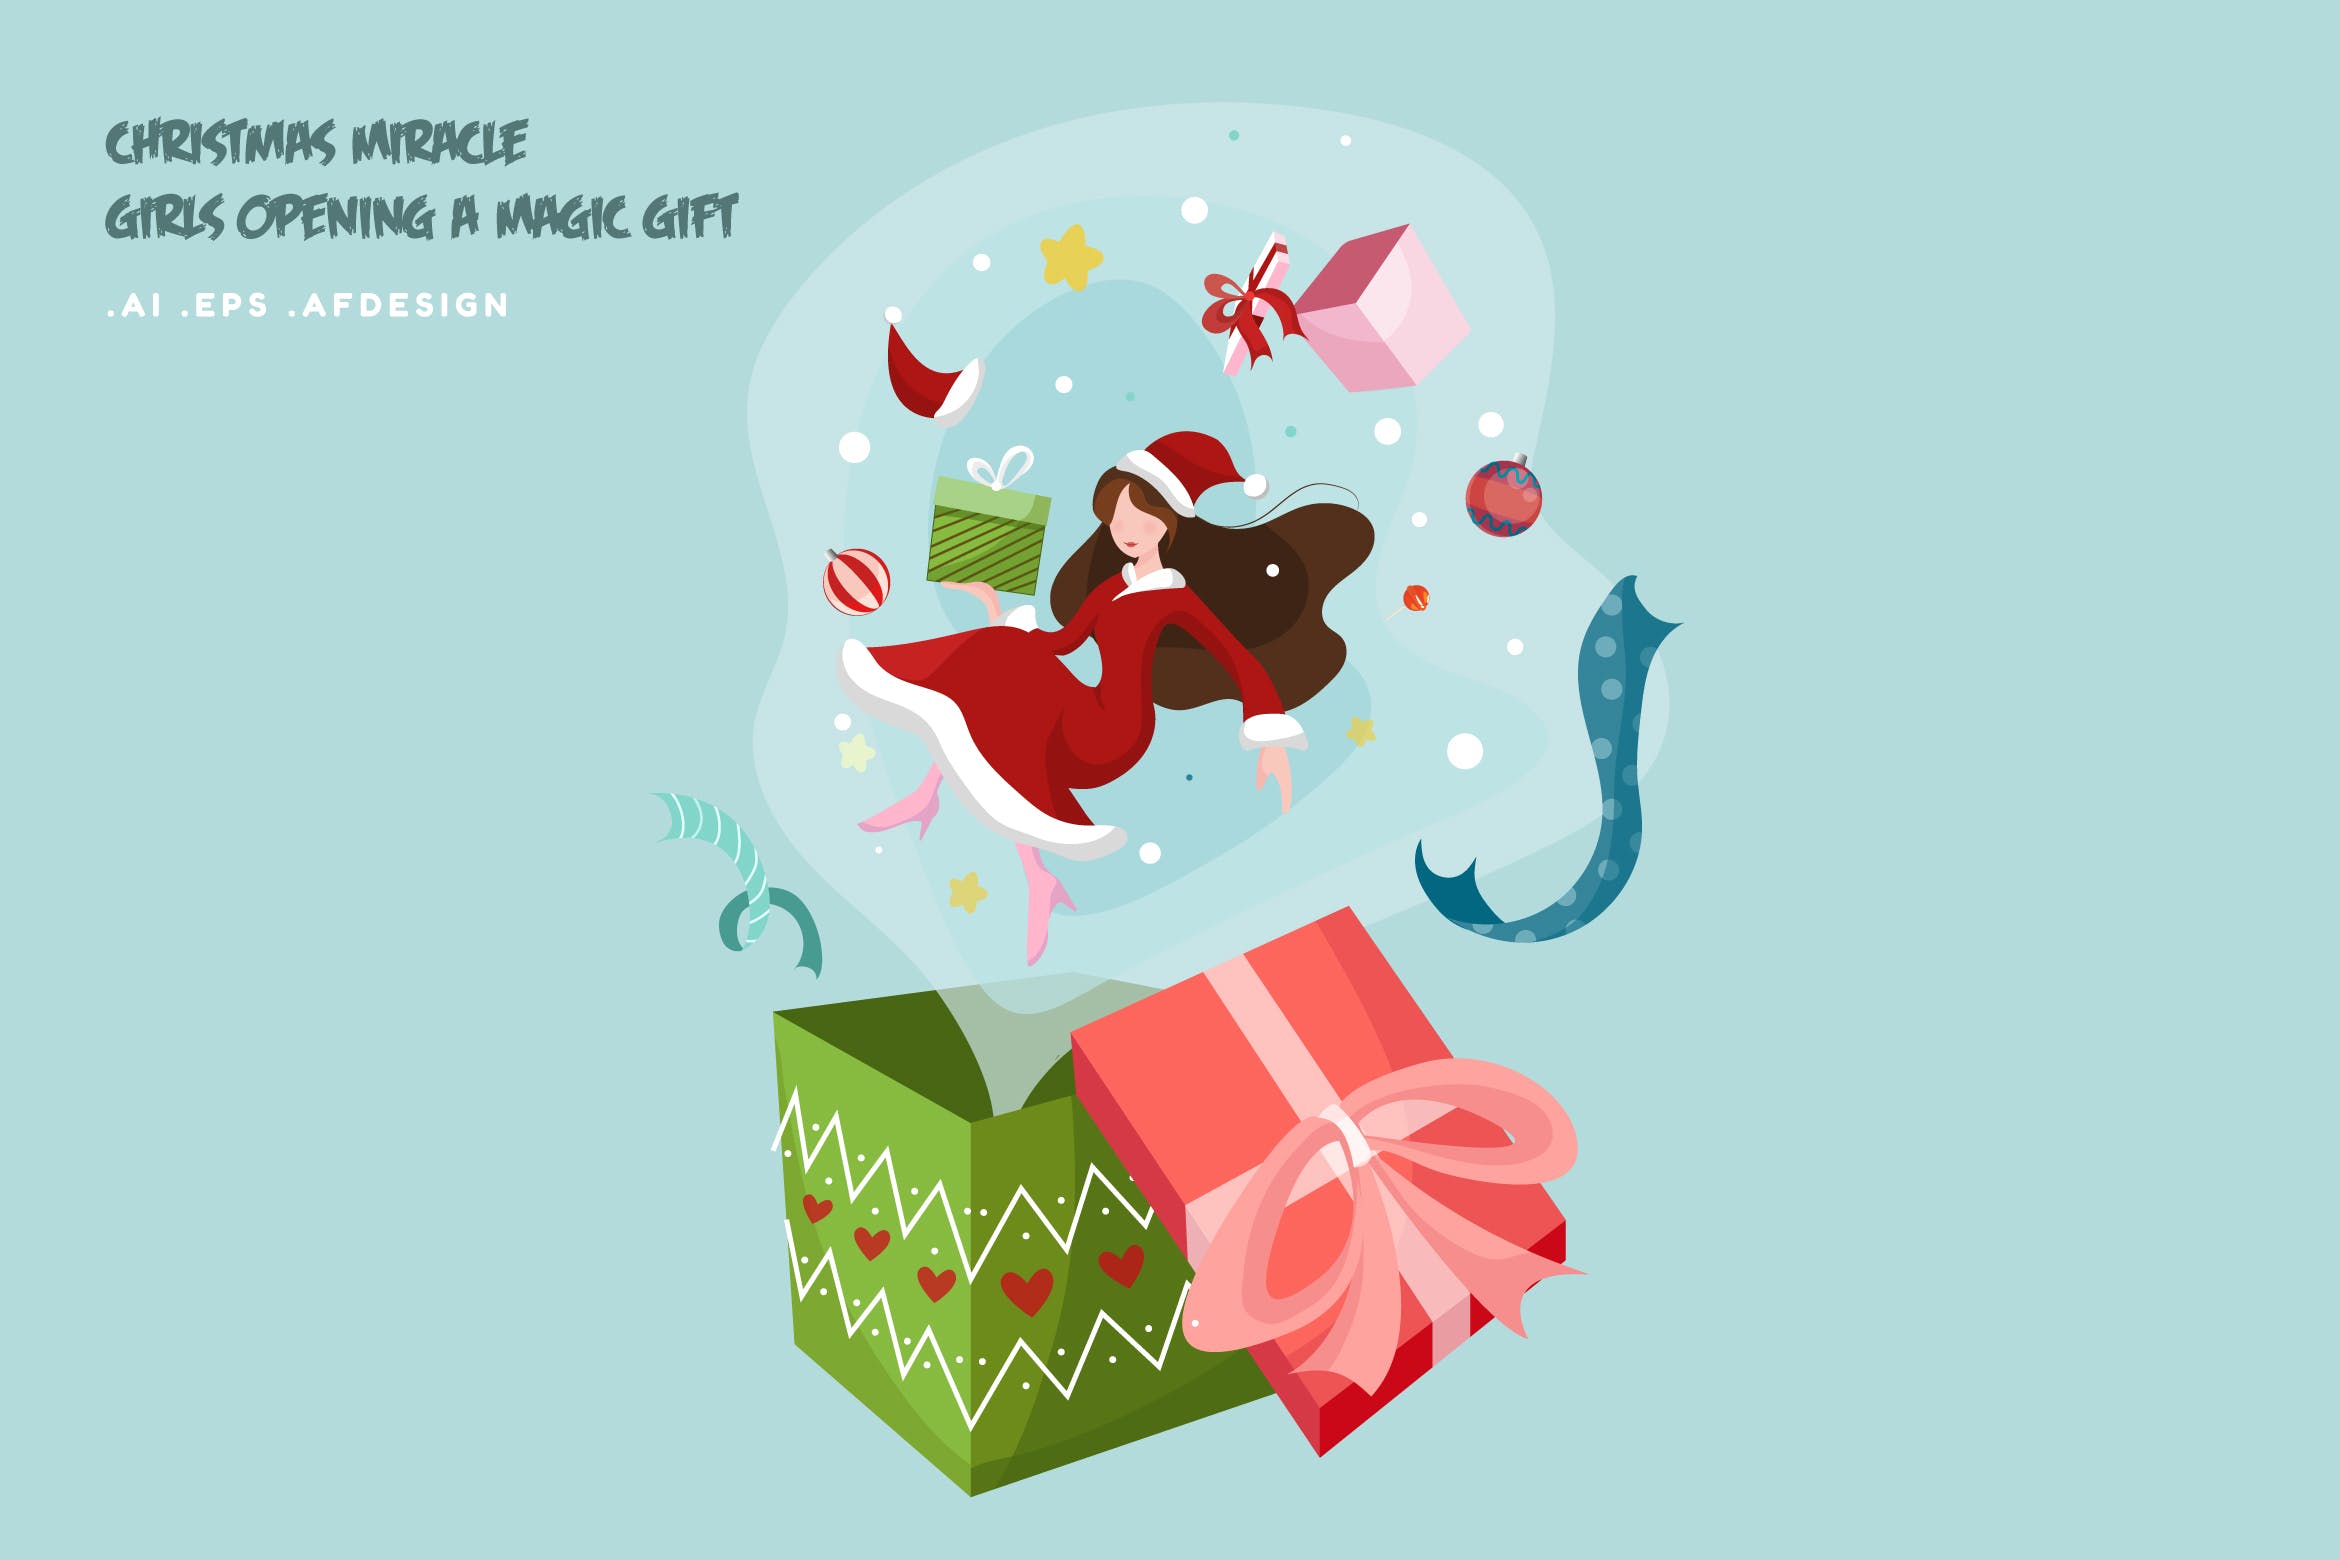 魔法礼物主题圣诞女孩矢量插画 Christmas Miracle girl opening a magic gift设计素材模板